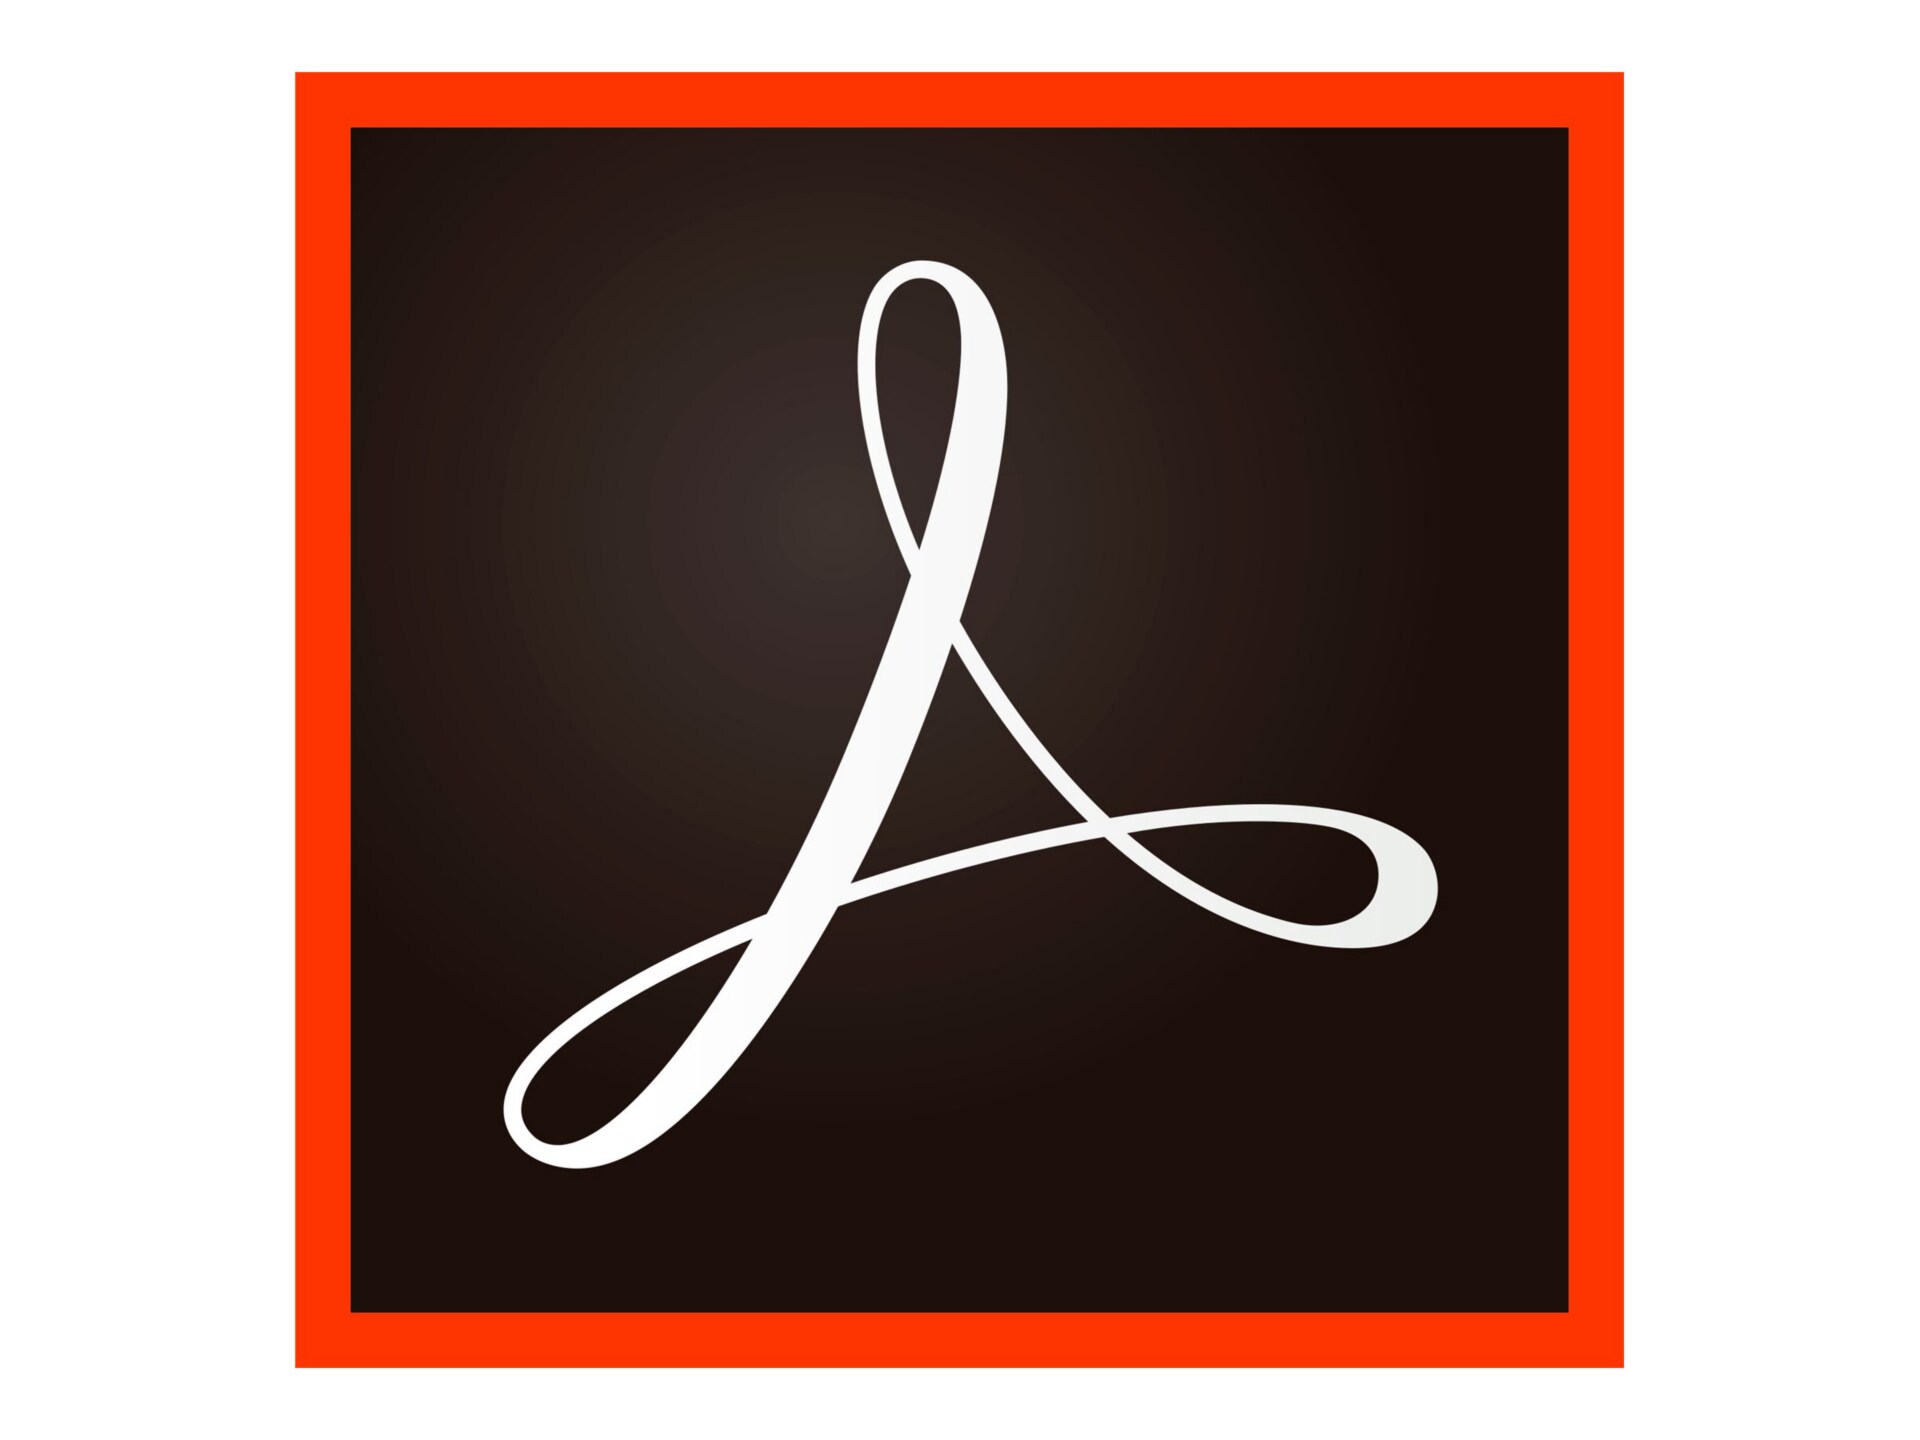 Adobe Acrobat Pro 2017 - media and documentation set